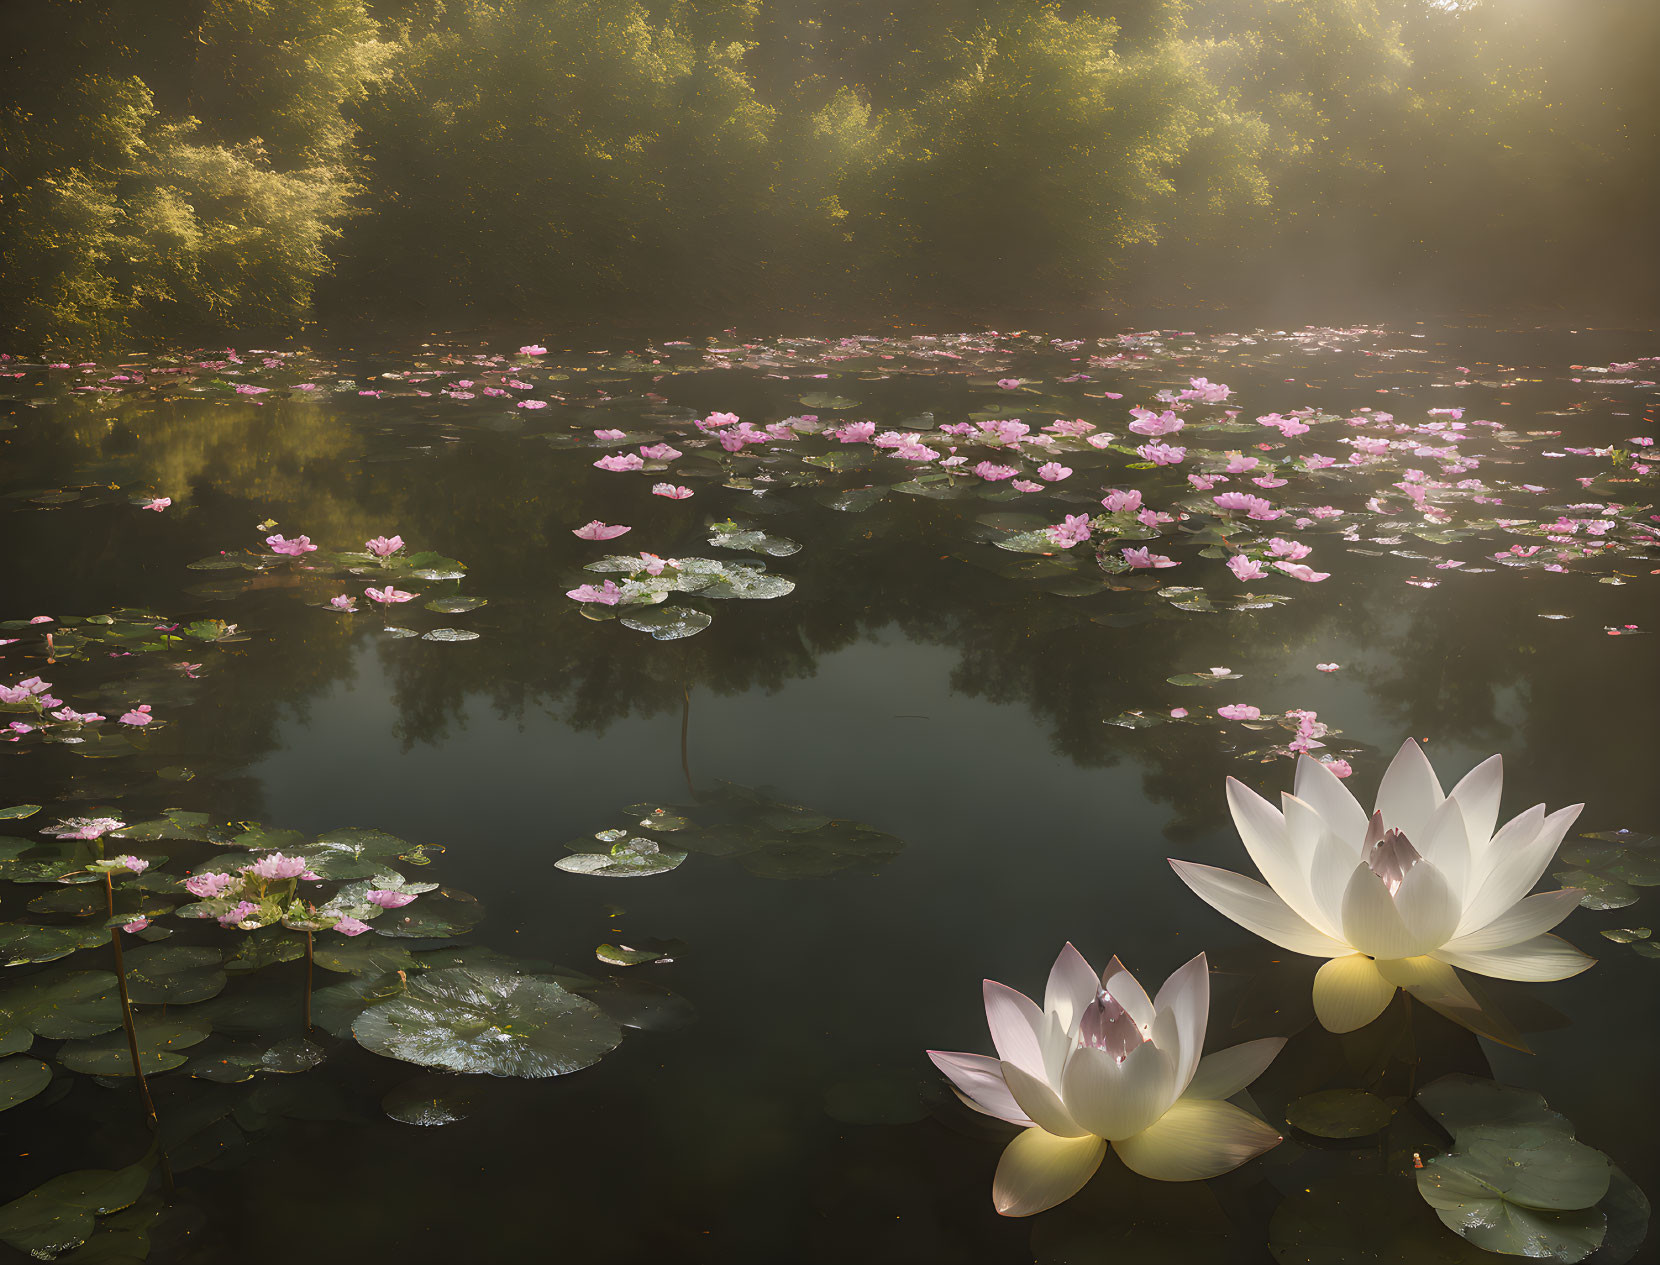 Pond of lotus